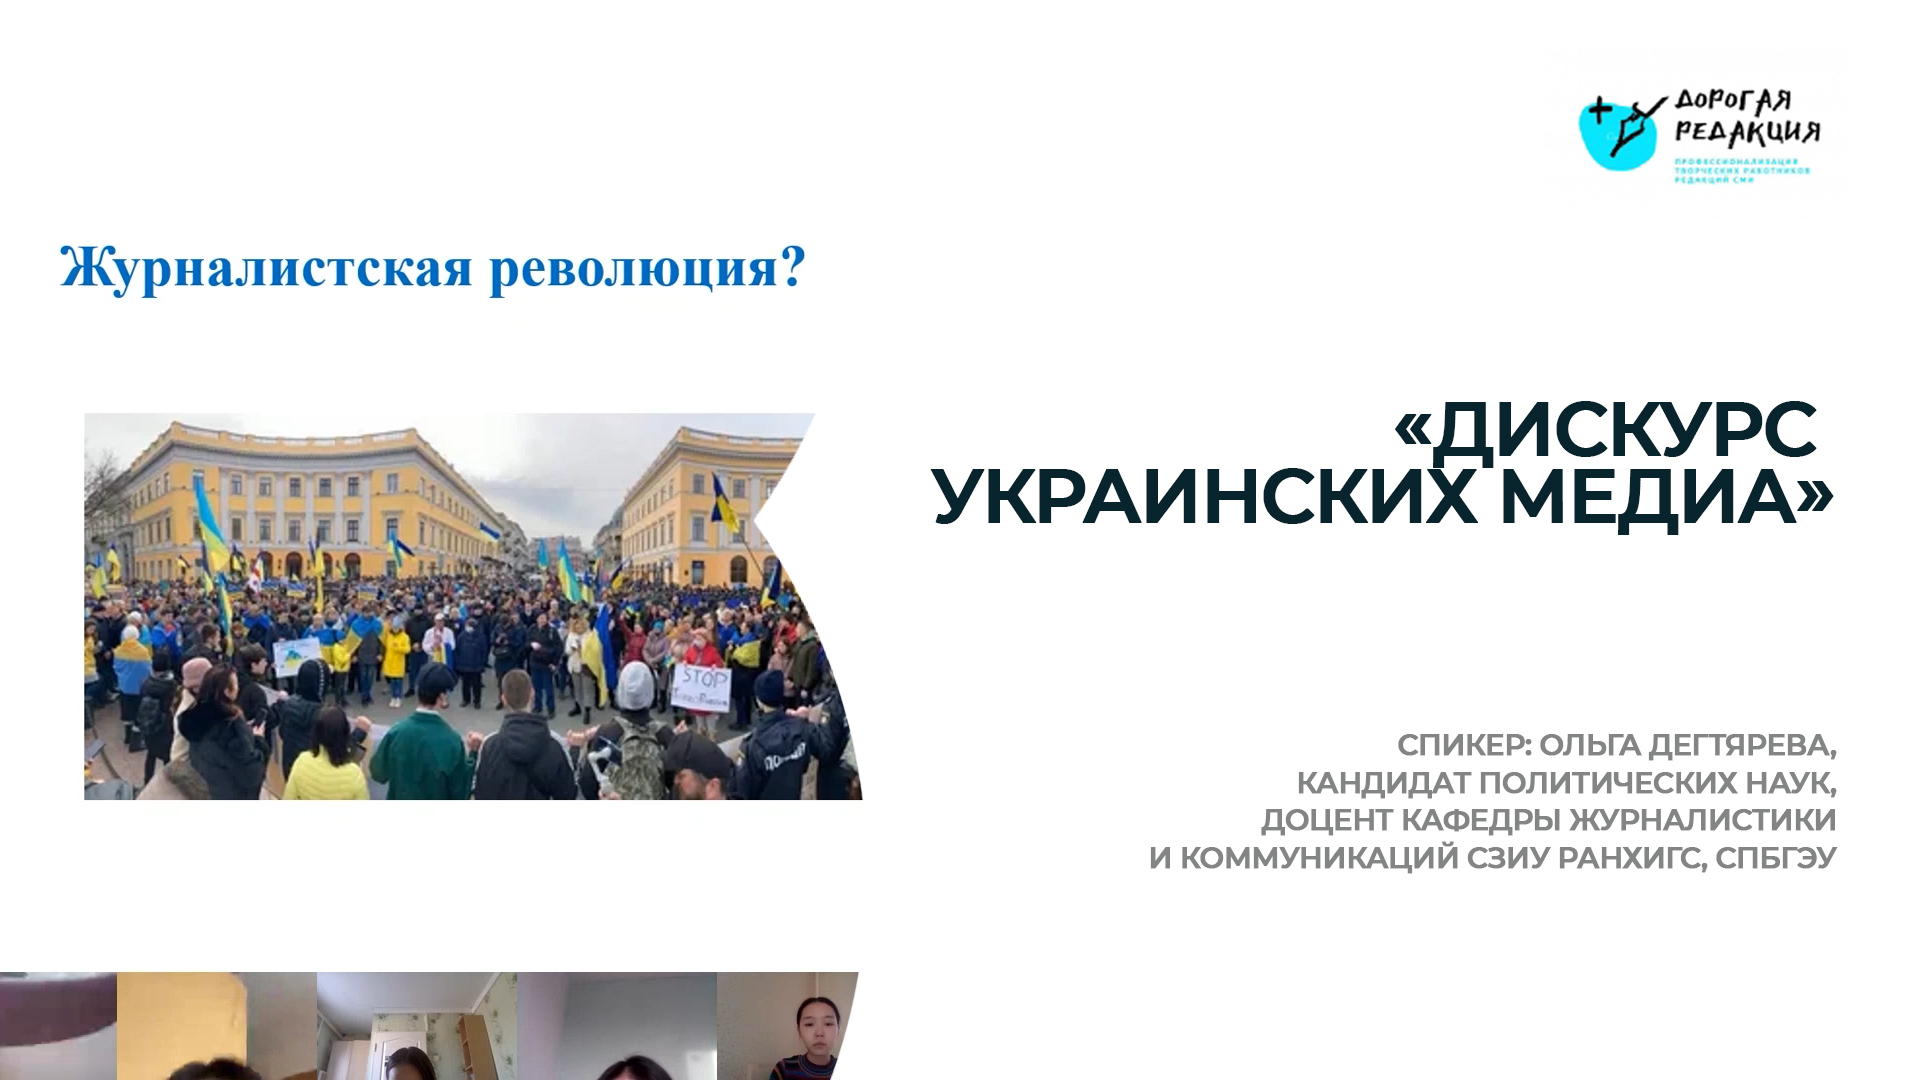 «Медиа в современной Украине: от демократизации к «кланизации»